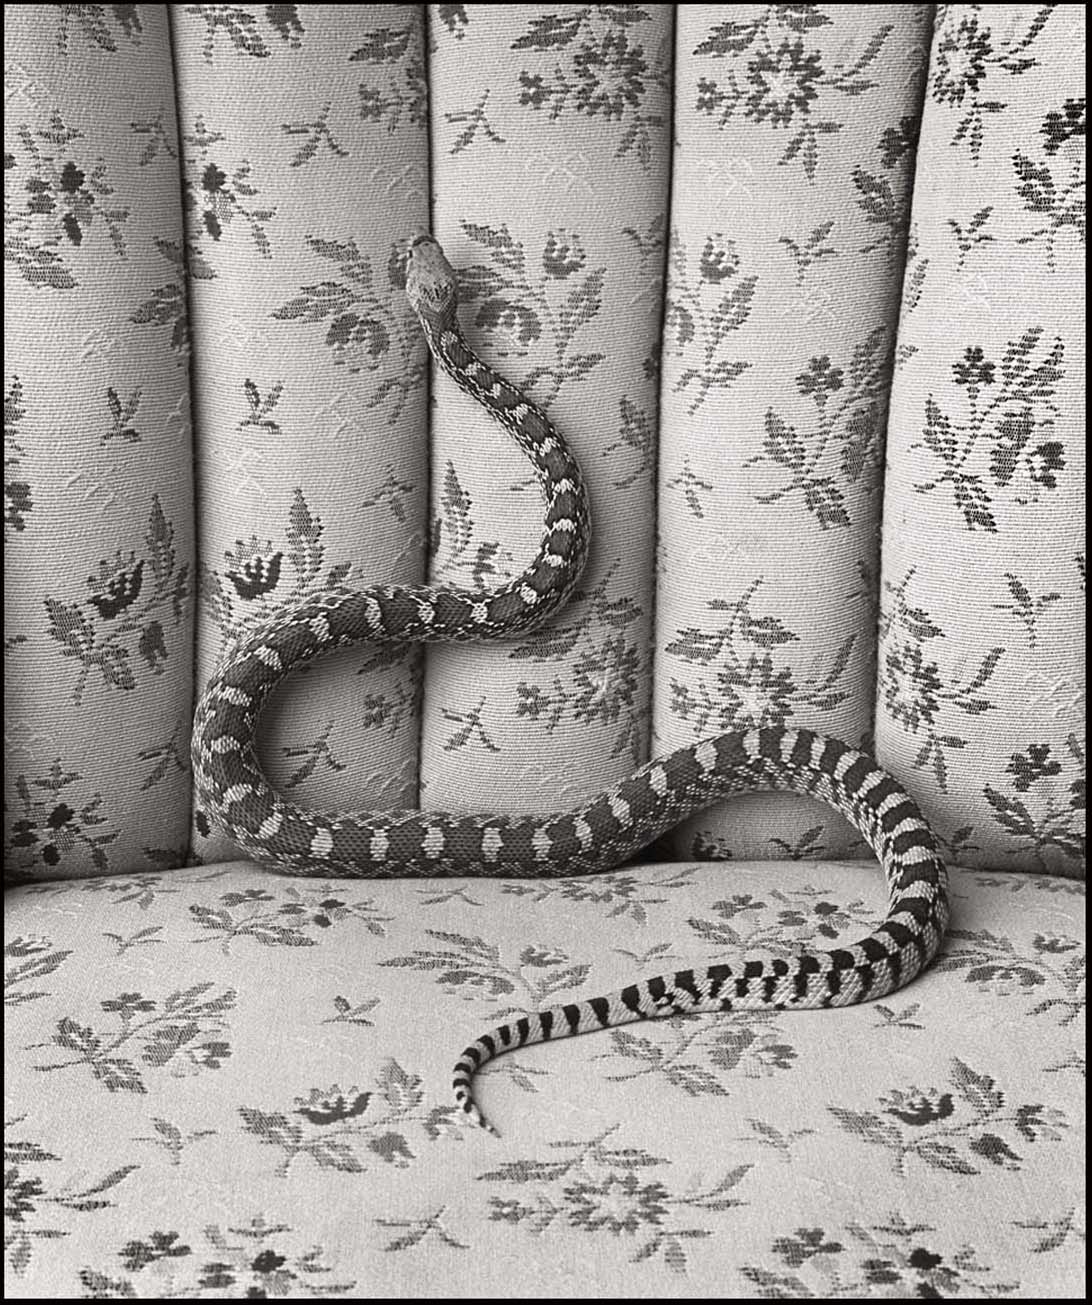 Bull Snake on Sofa_© James H. Evans